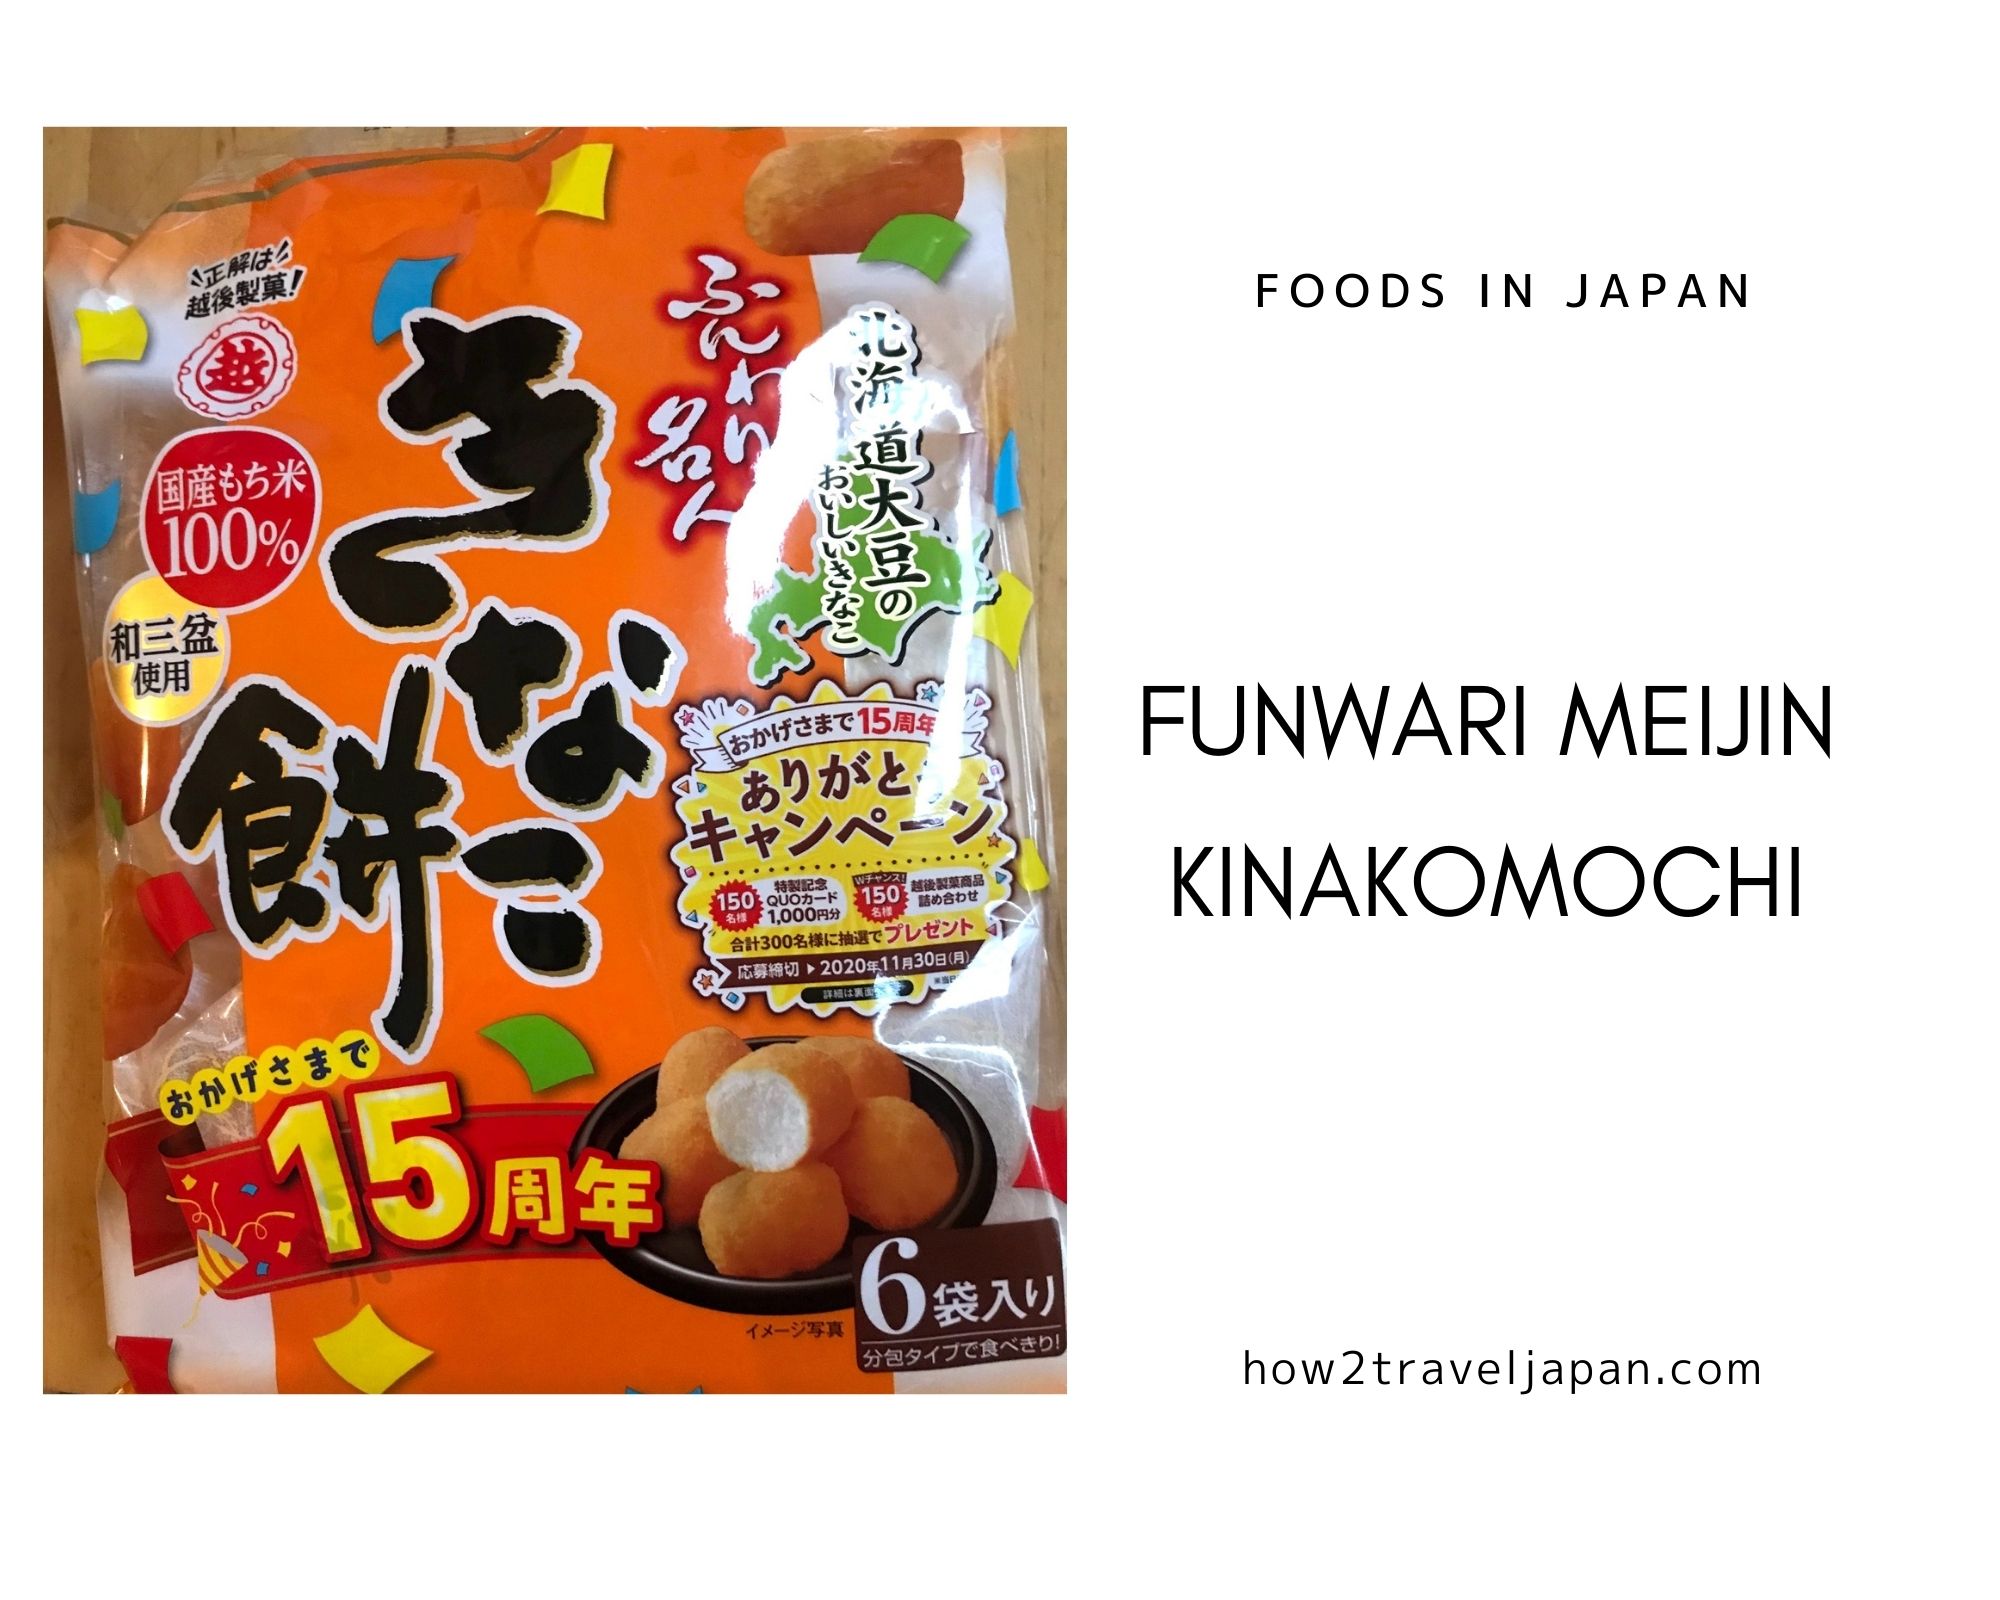 You are currently viewing Funwari Meijin Kinakomochi from Echigo seika